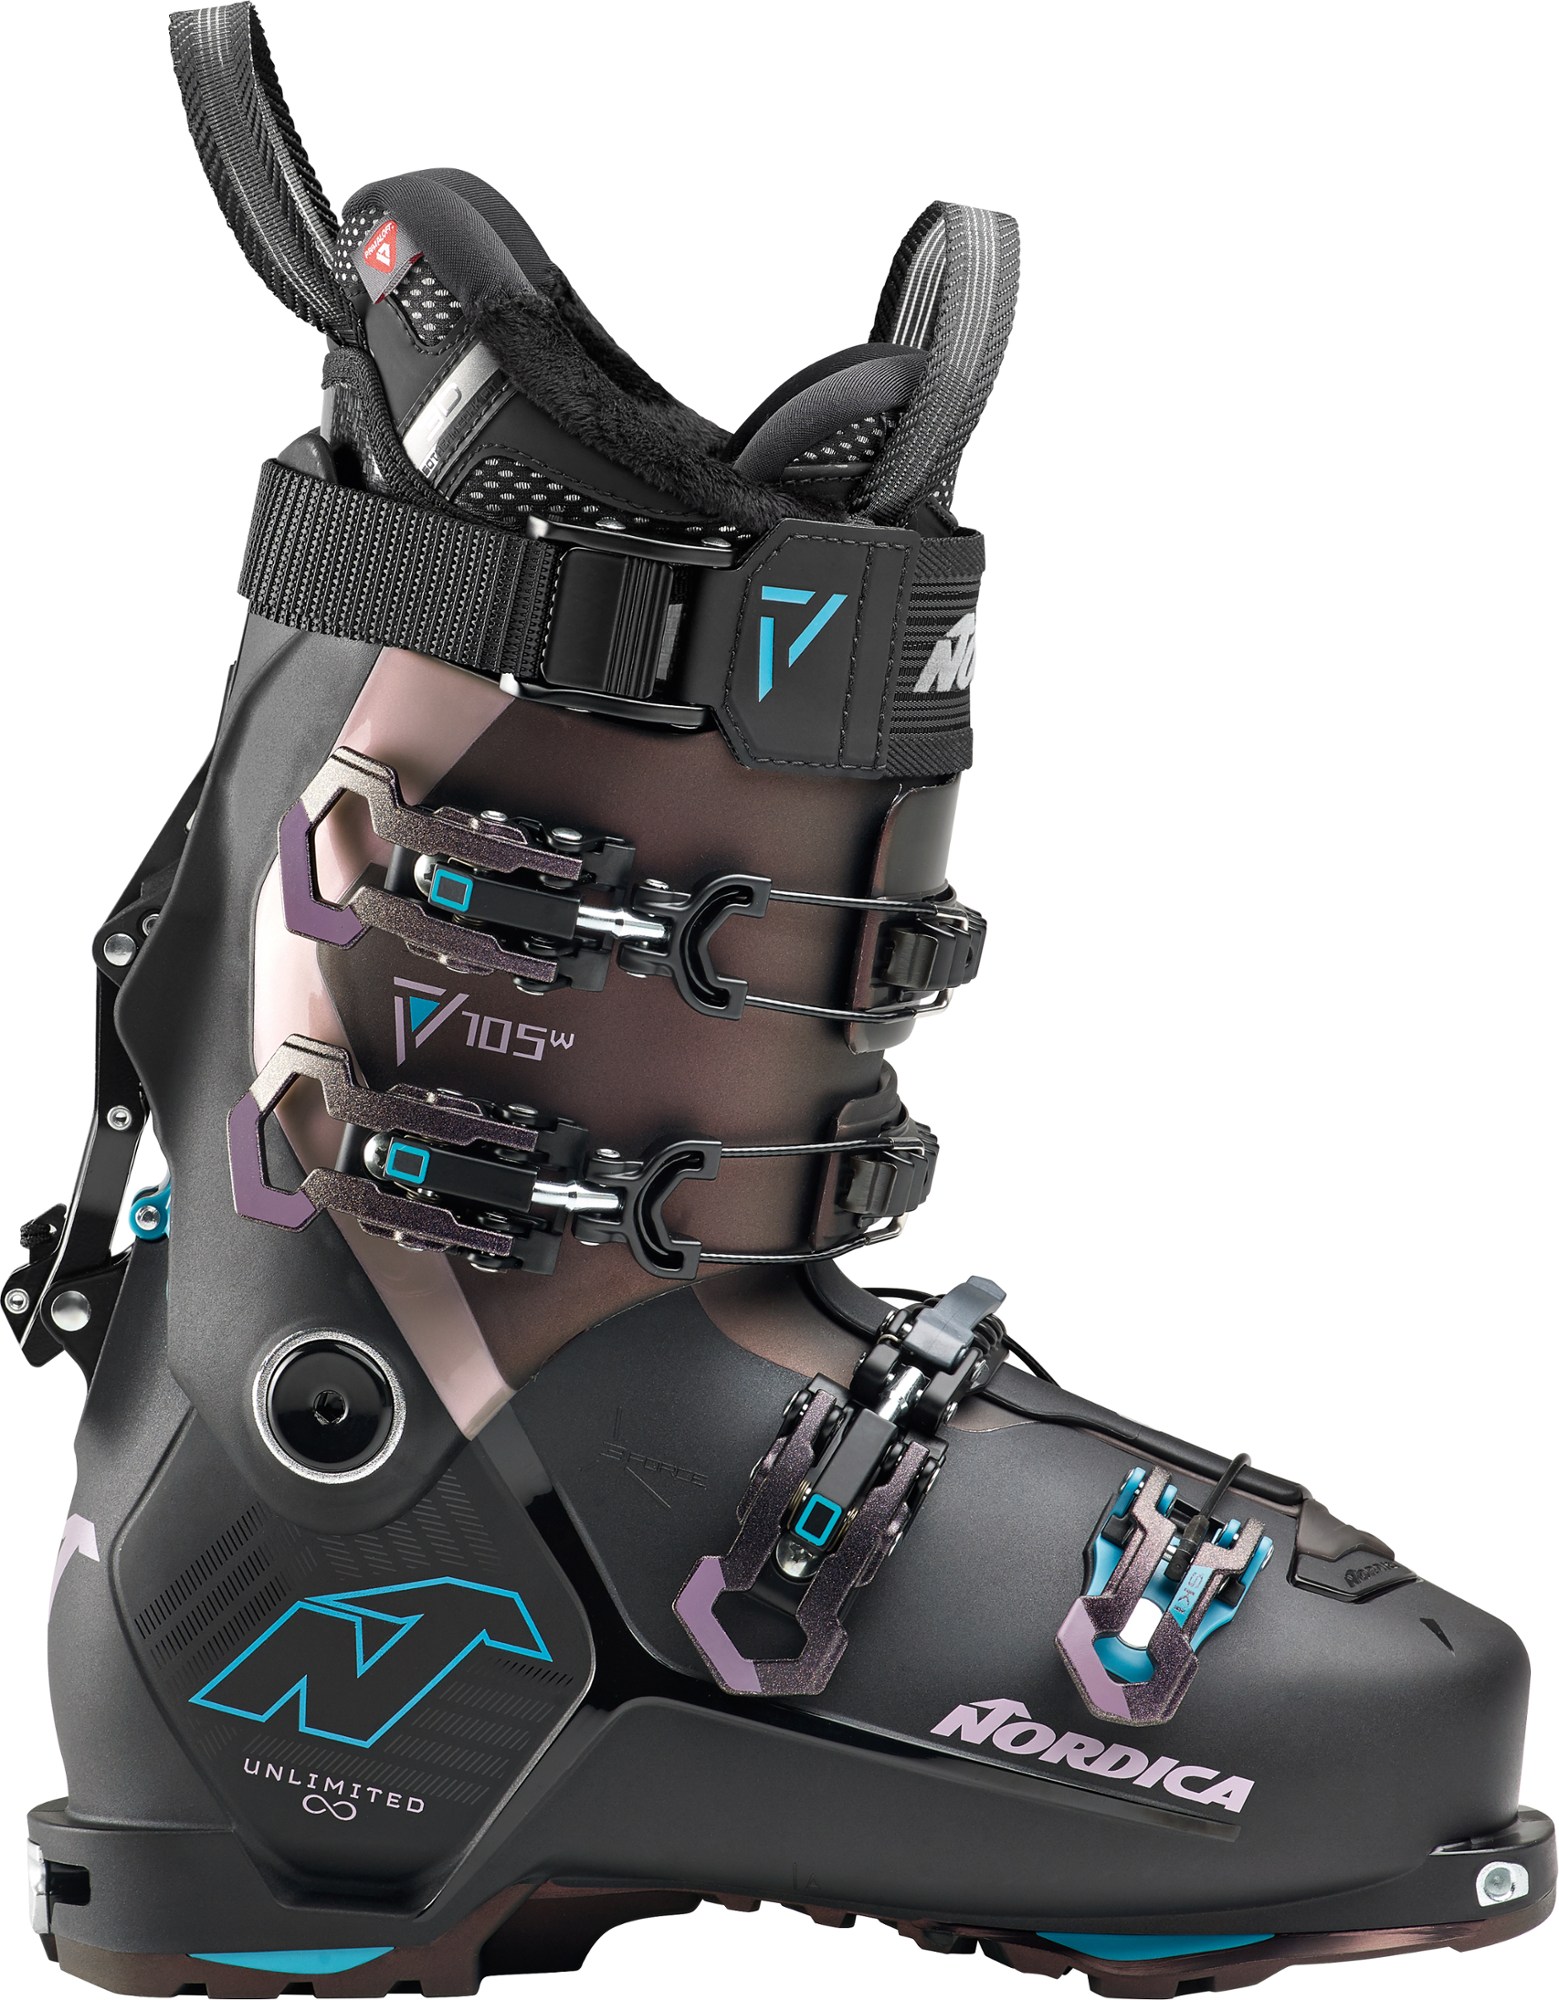 Лыжные ботинки Unlimited 105 W DYN - женские - 2023/2024 г. Nordica, черный лыжные ботинки unlimited 105 w dyn женские 2023 2024 г nordica черный